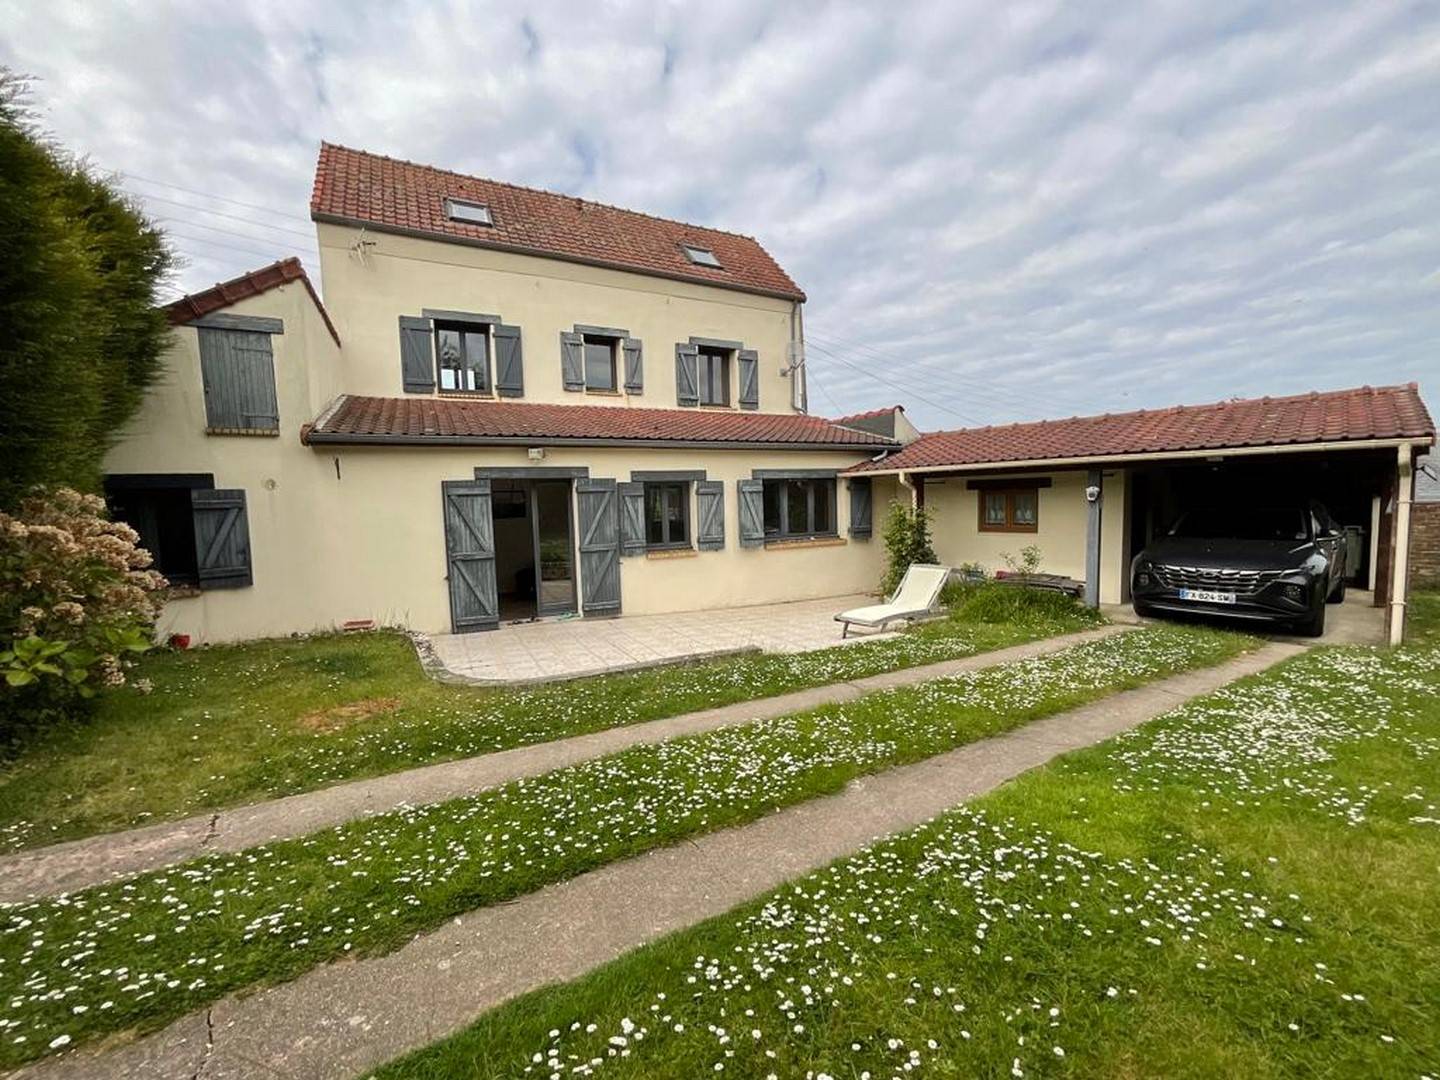 A vendre maison de ville de 146m² proche de la mer, Normandie.